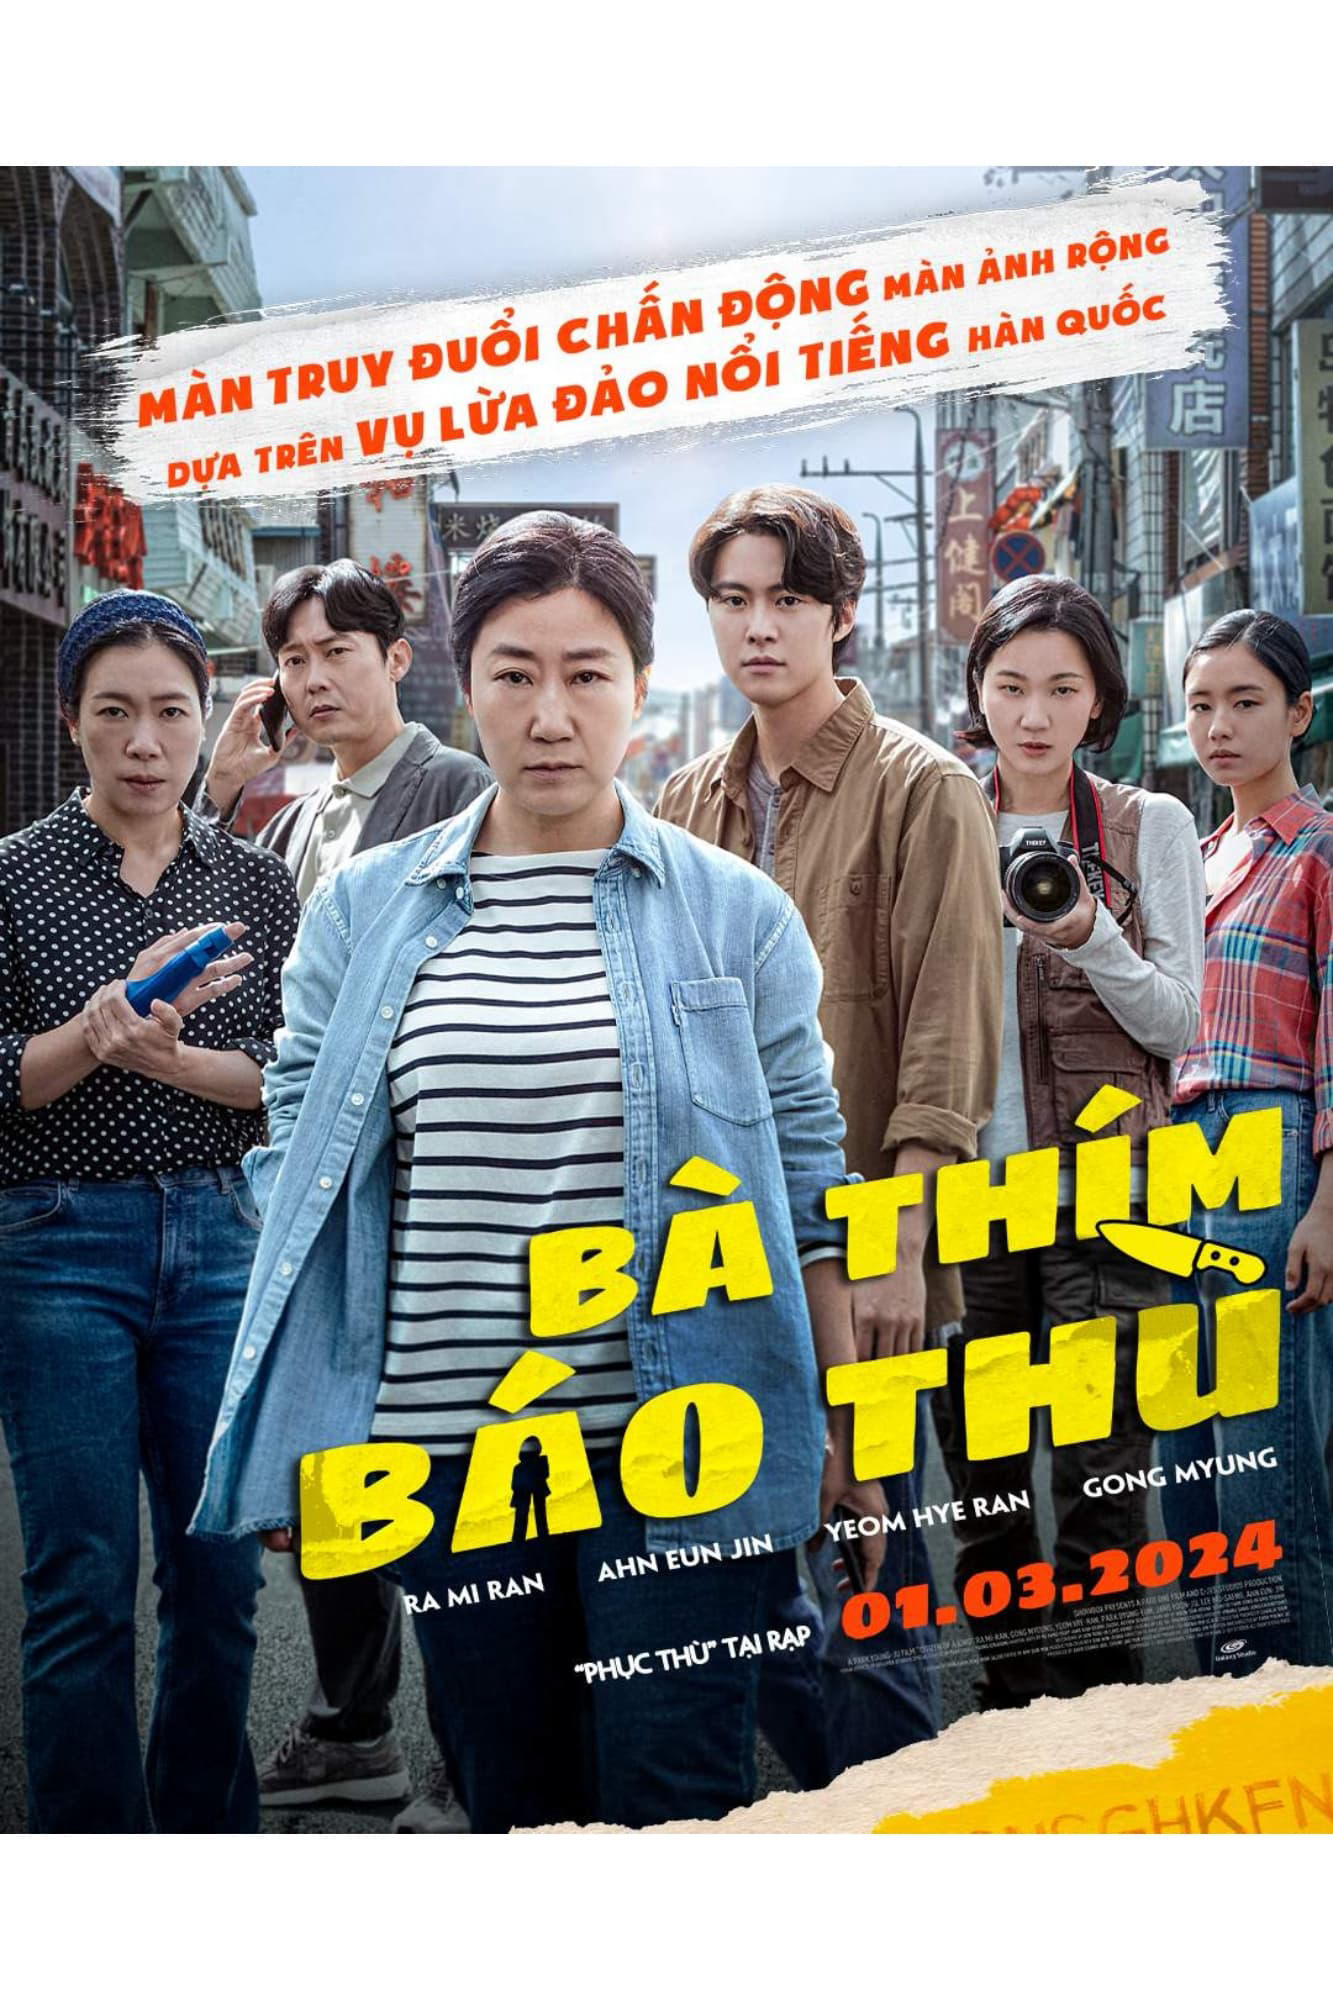 Poster Phim Bà Thím Báo Thù (Citizen of a Kind)